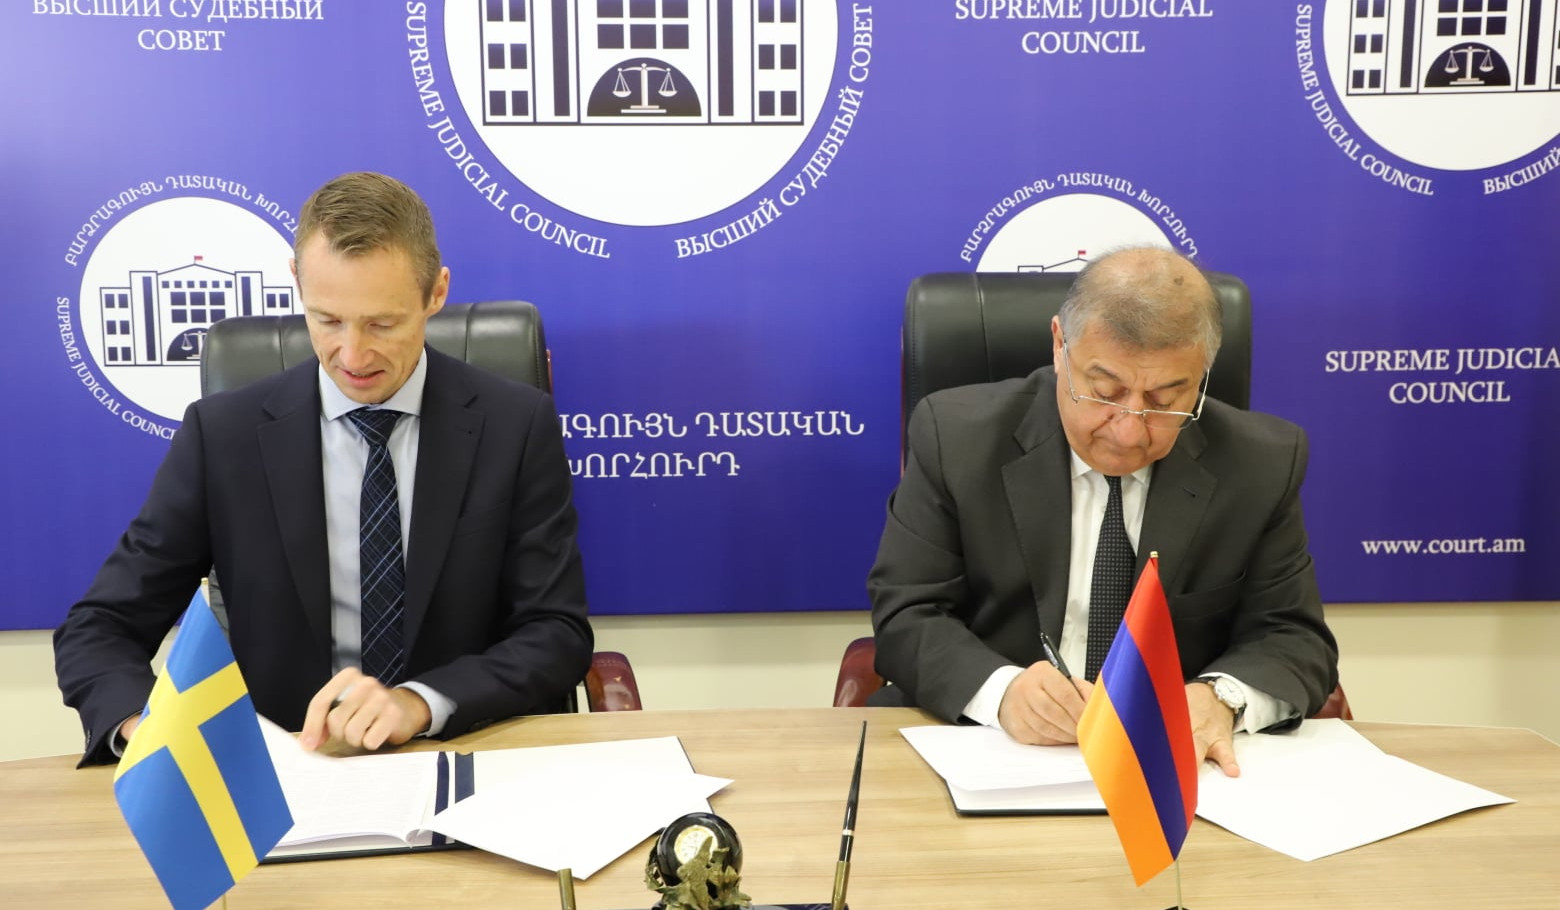 Գագիկ Ջհանգիրյանը և Ստոկհոլմի Վերաքննիչ դատարանի դատավորը համագործակցության հուշագիր են ստորագրել